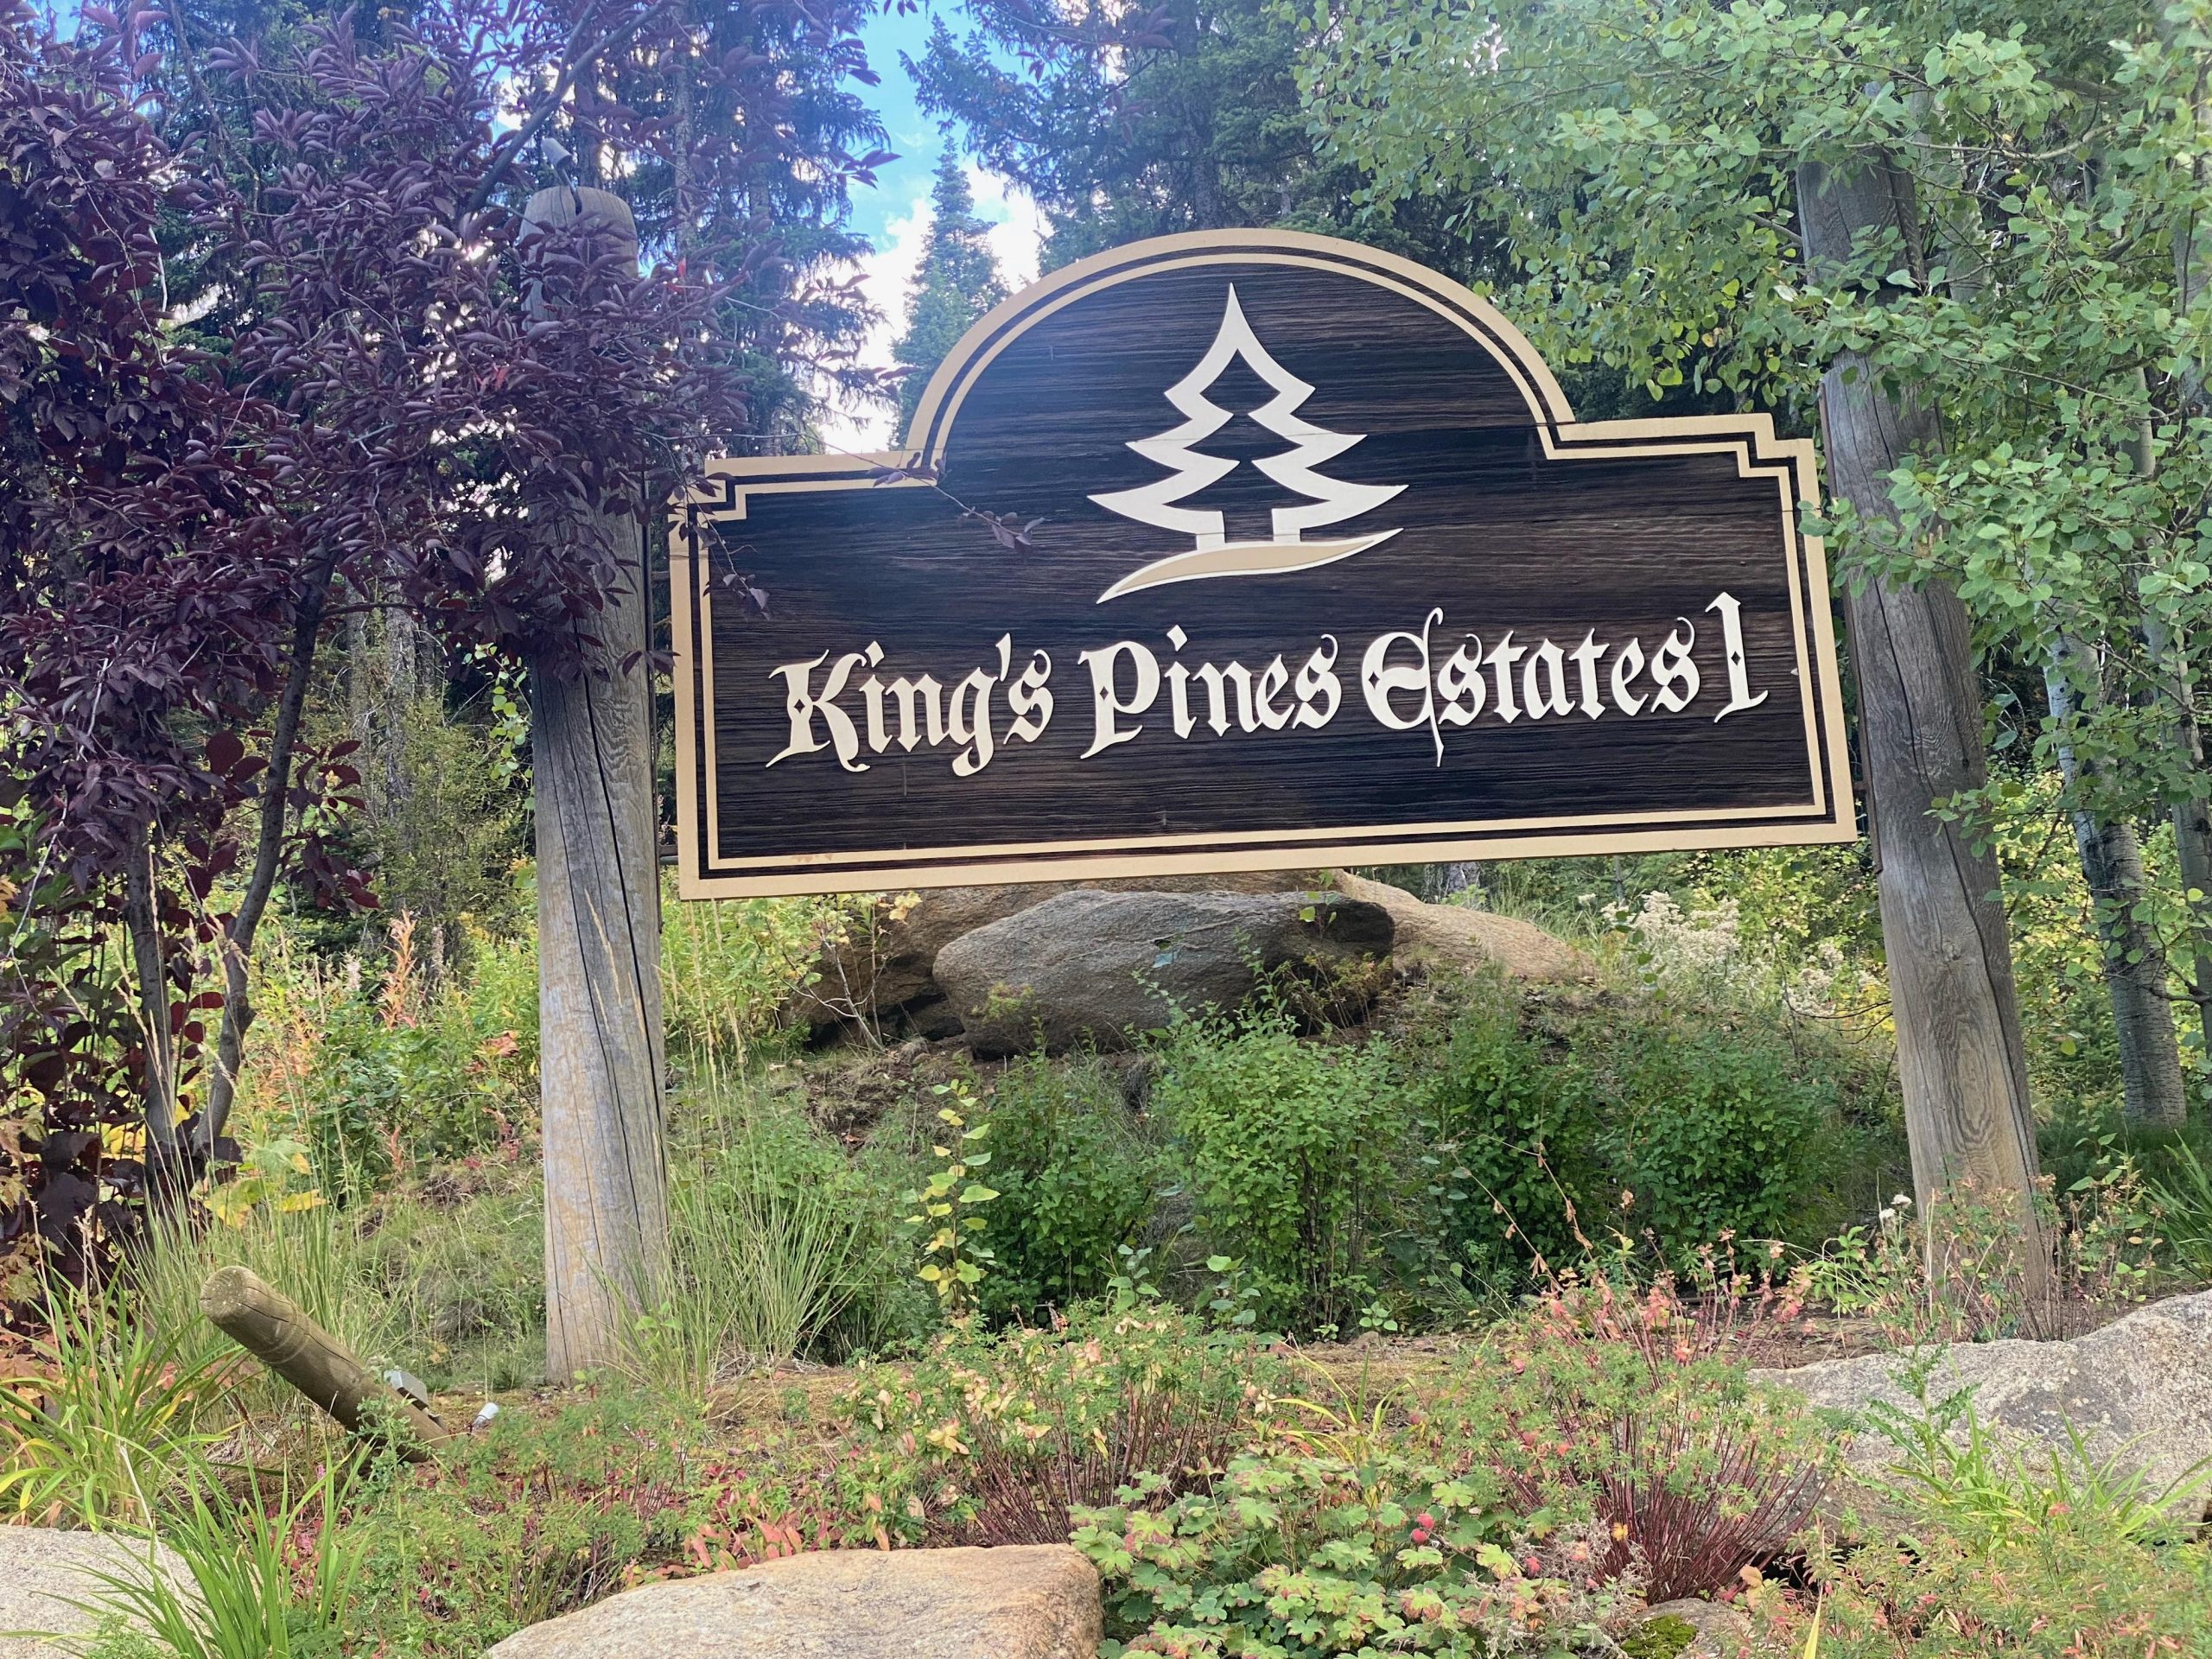 Kings pines Estates